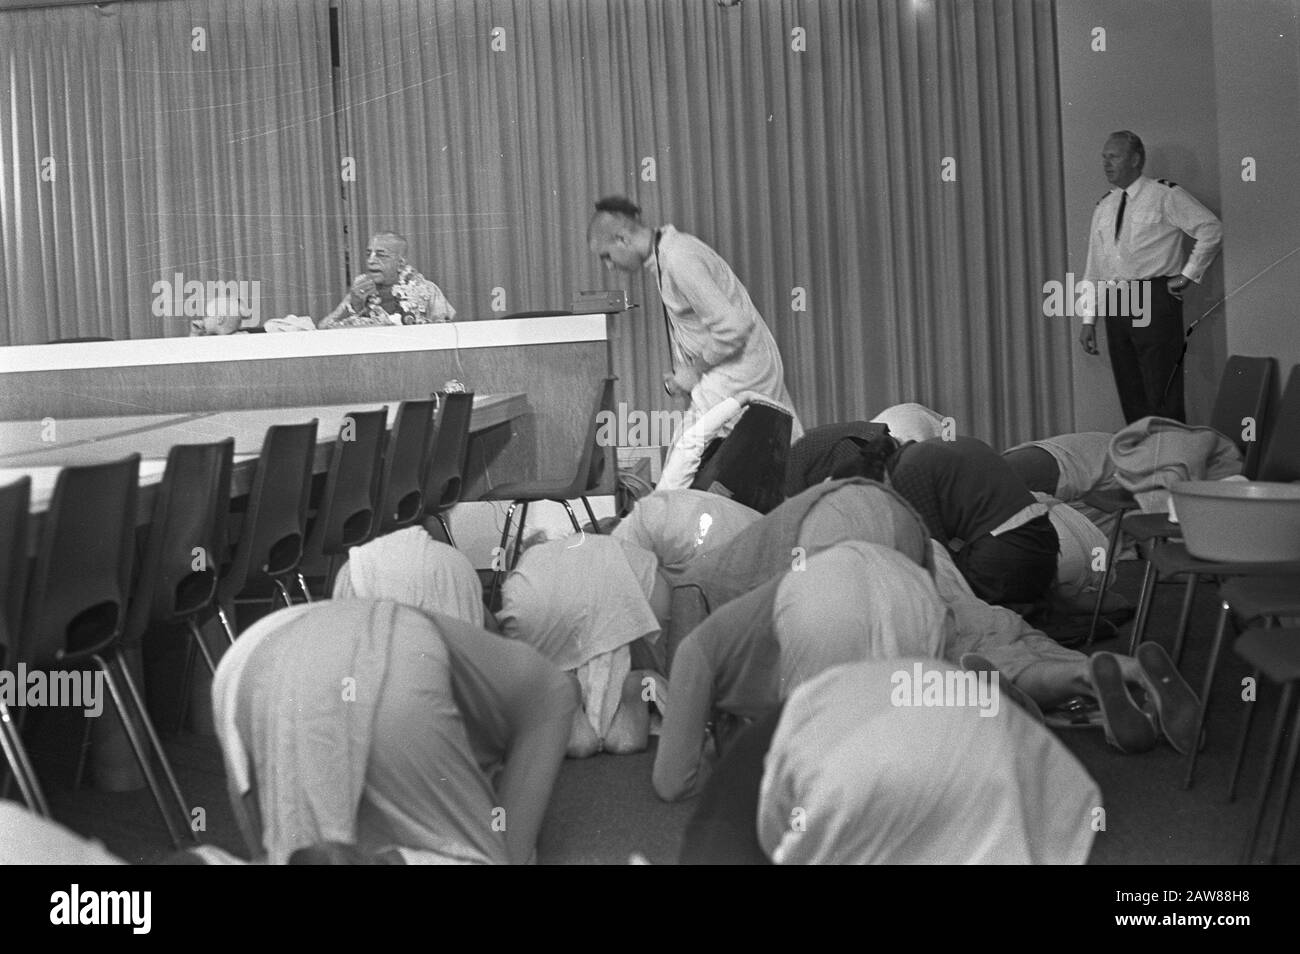 Leader du mouvement Hare Krishna à Schiphol disciples dans la prière Date : 28 juillet 1972 lieu : Schiphol mots clés : conférences de presse, religions, aéroports Banque D'Images